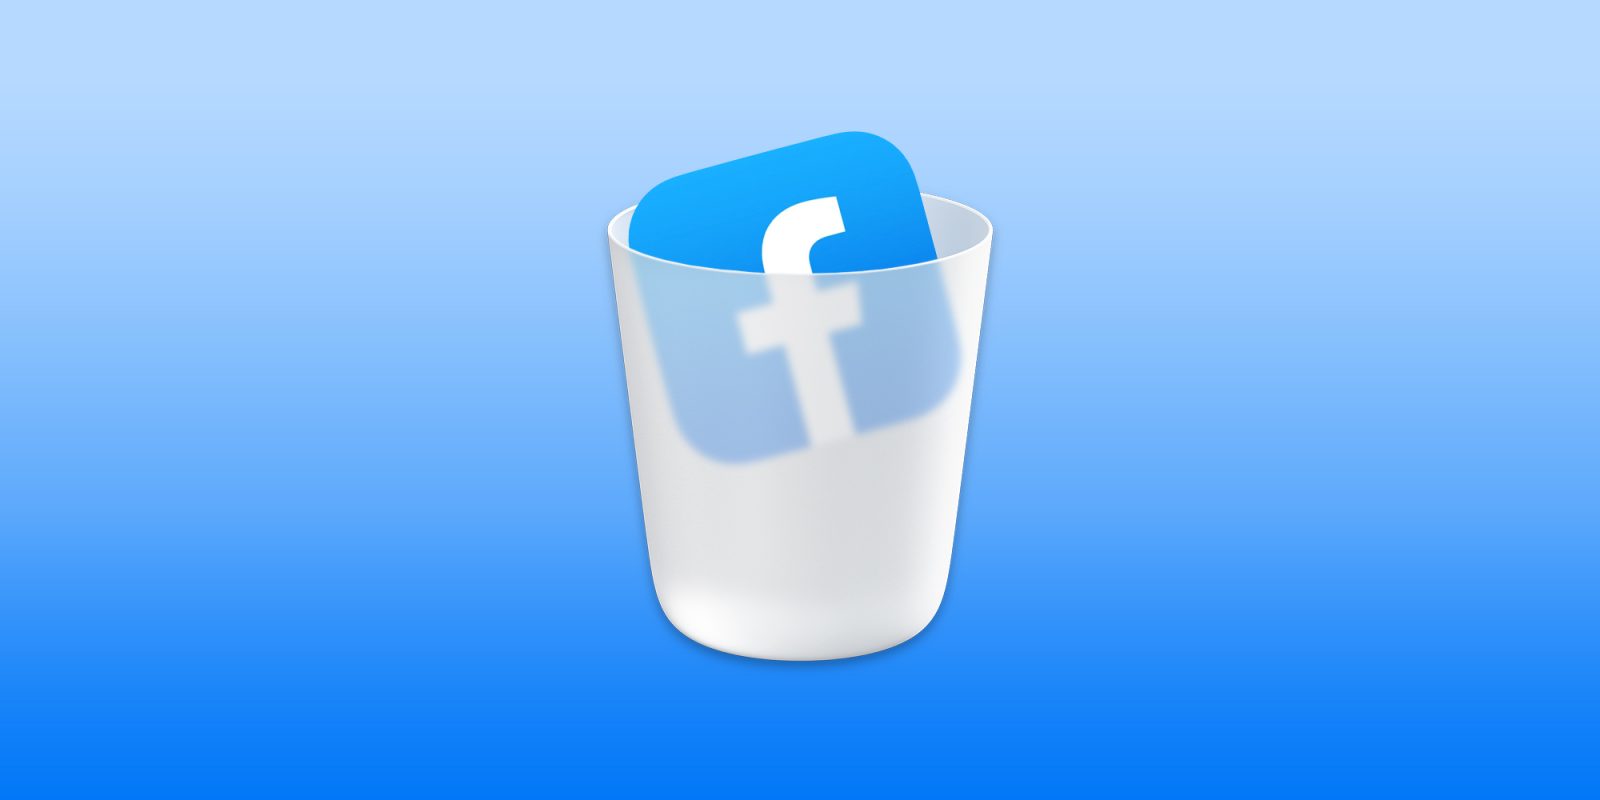 So löschen Sie Ihr Facebook-Konto, deaktivieren oder ändern Ihre Datenschutzeinstellungen